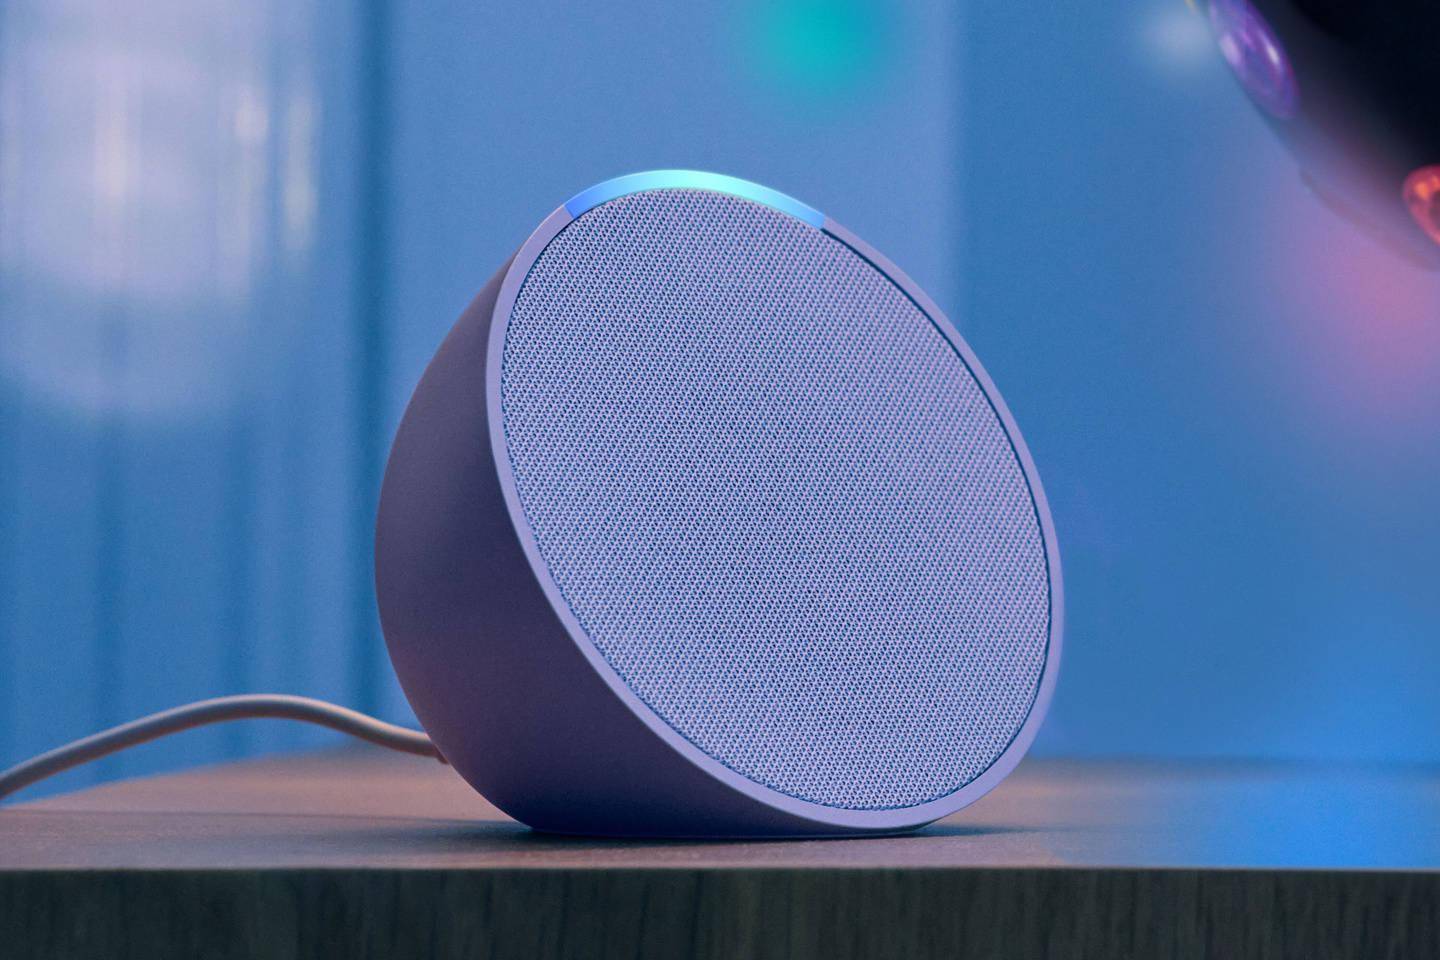 亚马逊推出新款Echo智能音箱，计划为Alexa语音助手注入生成式AI